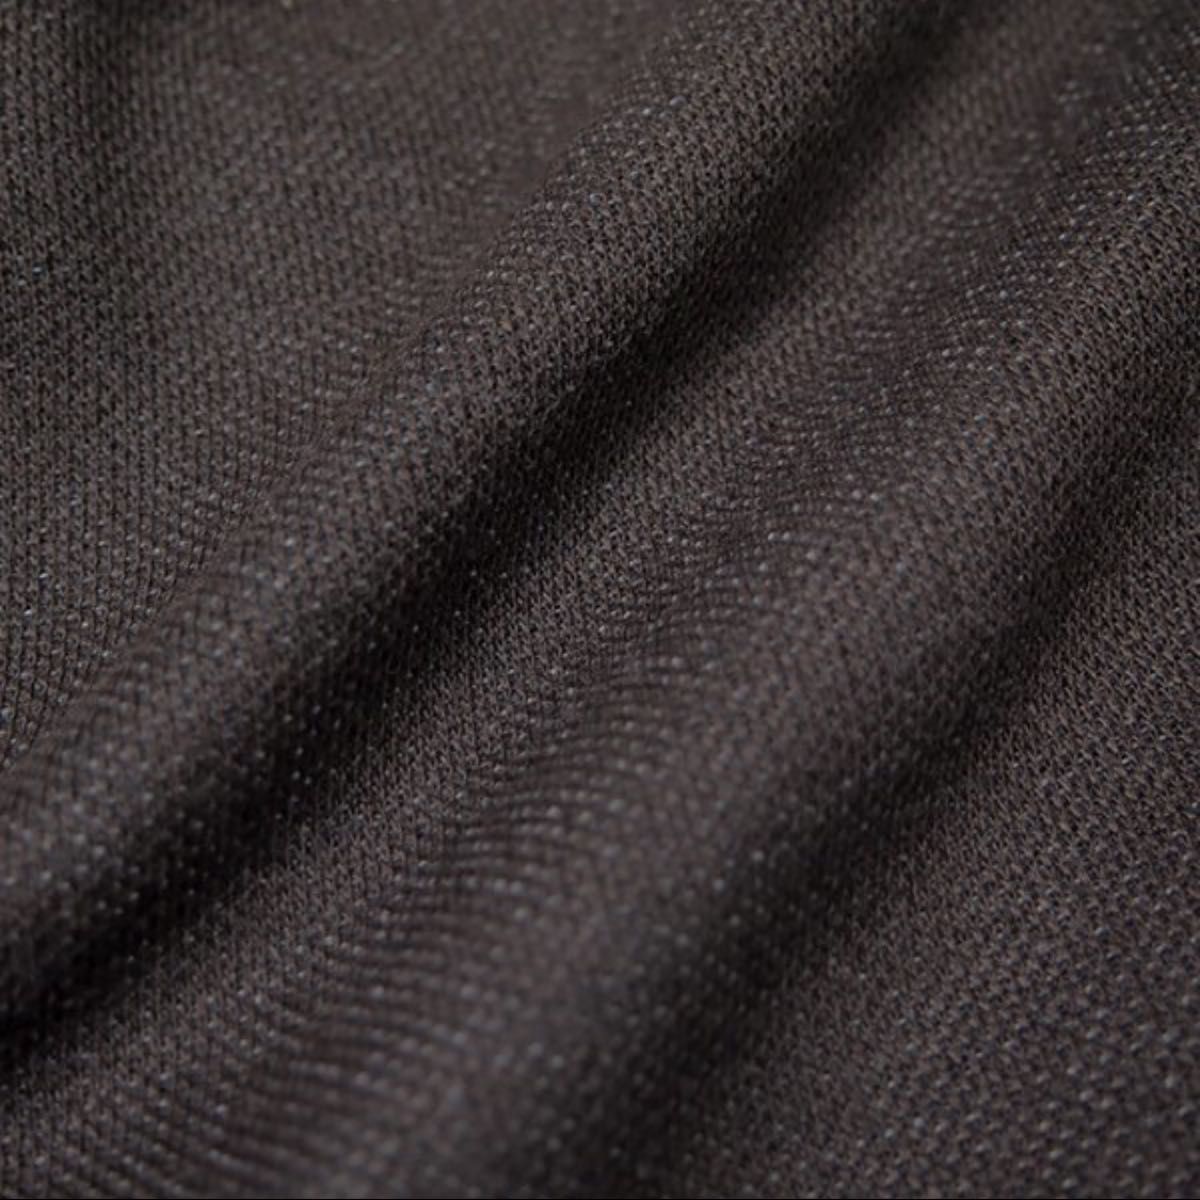 新品【KANSAI】カンサイ裏起毛ジップアップニットブルゾンL(ブラウン)メンズジャケットセーターフルジップ洗濯可能